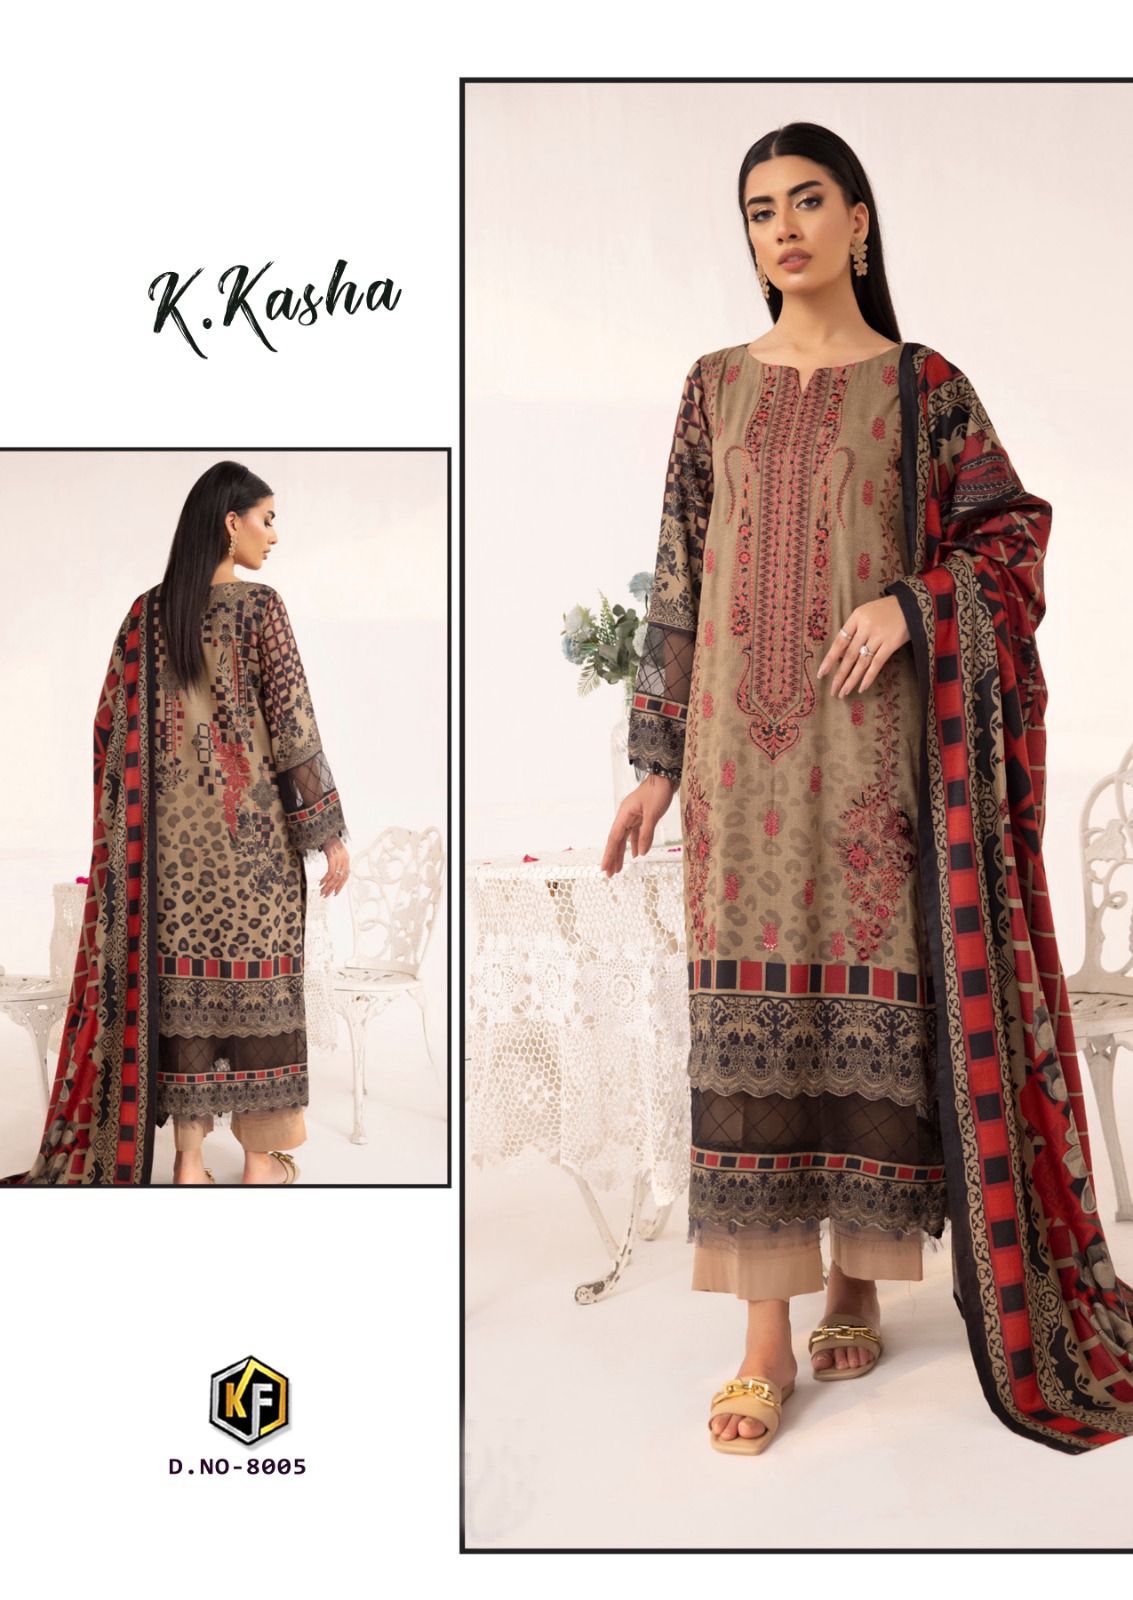 Keval K Kasha Vol 8 collection 2